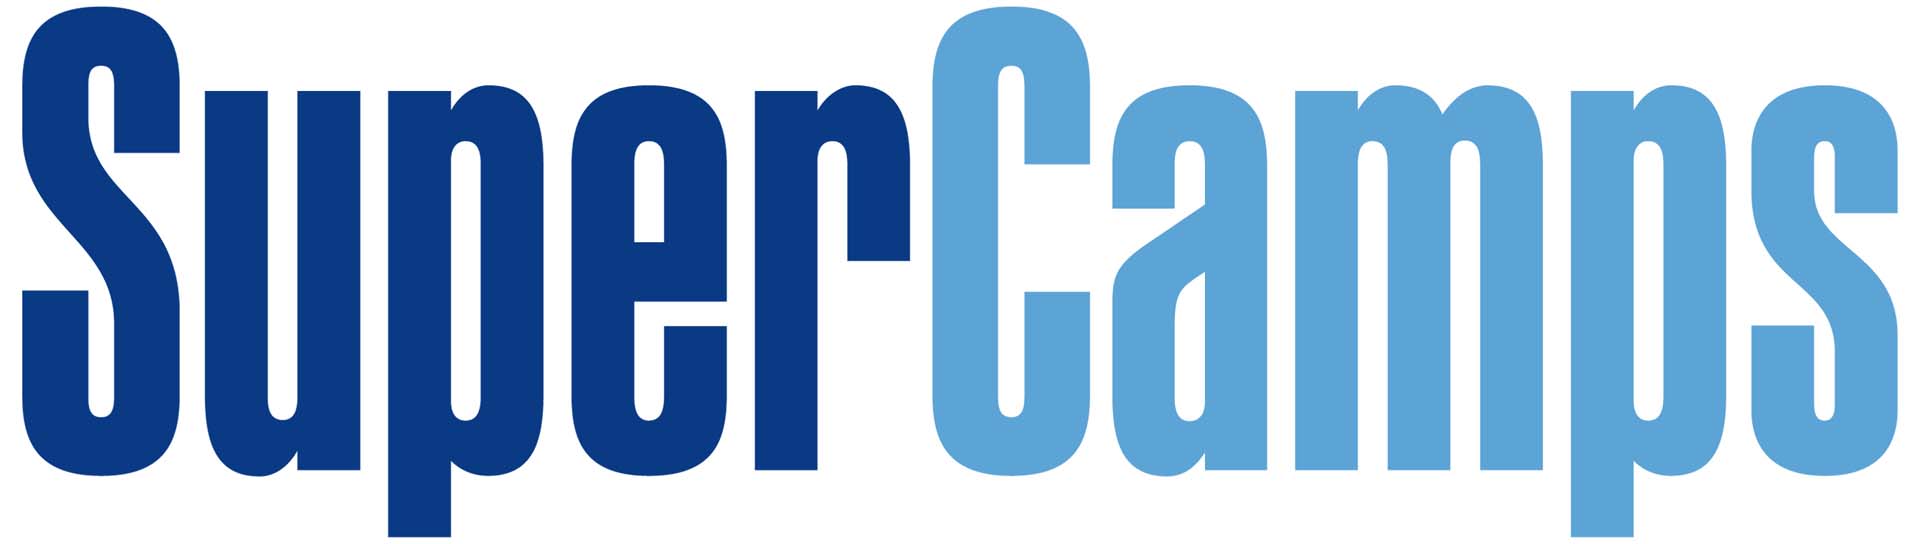 The SuperCamps logo